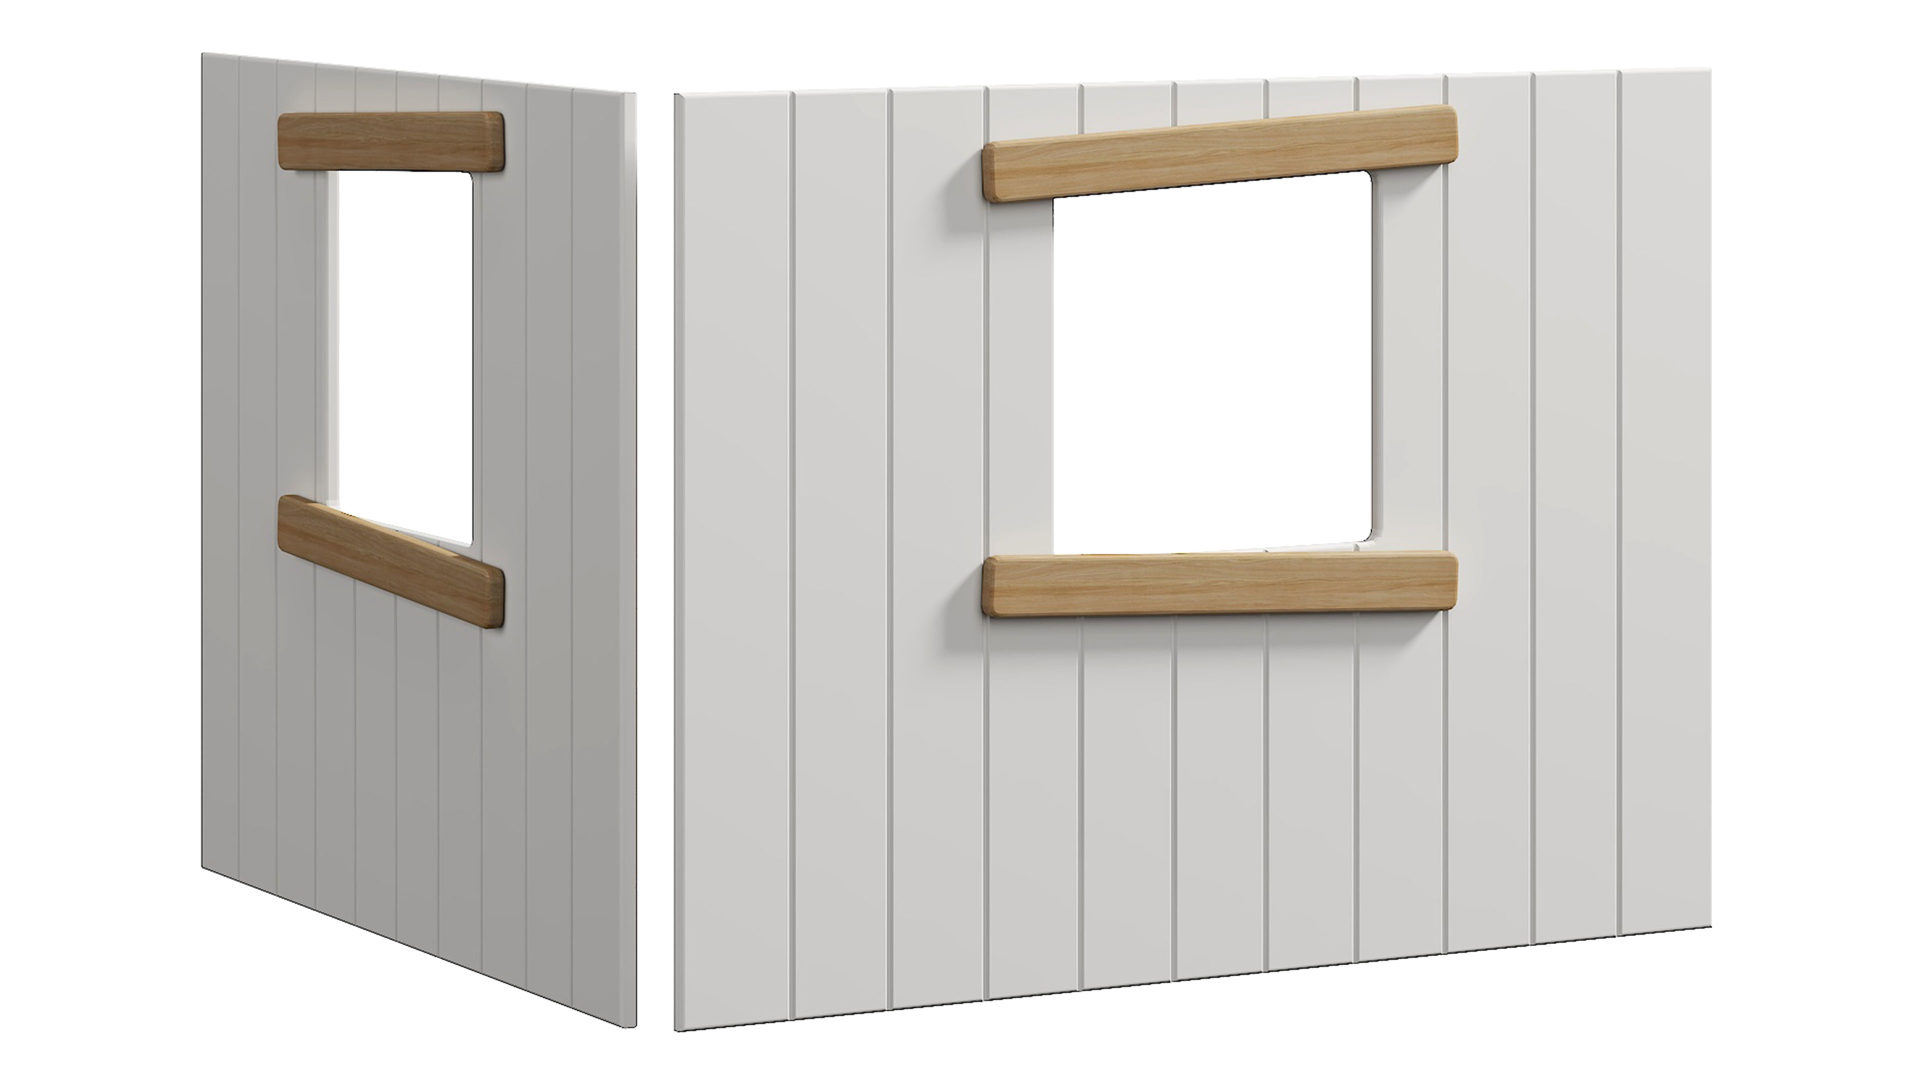 Spielbett-Zubehör Flexa® aus Holz in Weiß FLEXA® Kindermöbel Serie Nor - Baumhaus-Bettenfront Weiß & Eiche - zwei Fenster